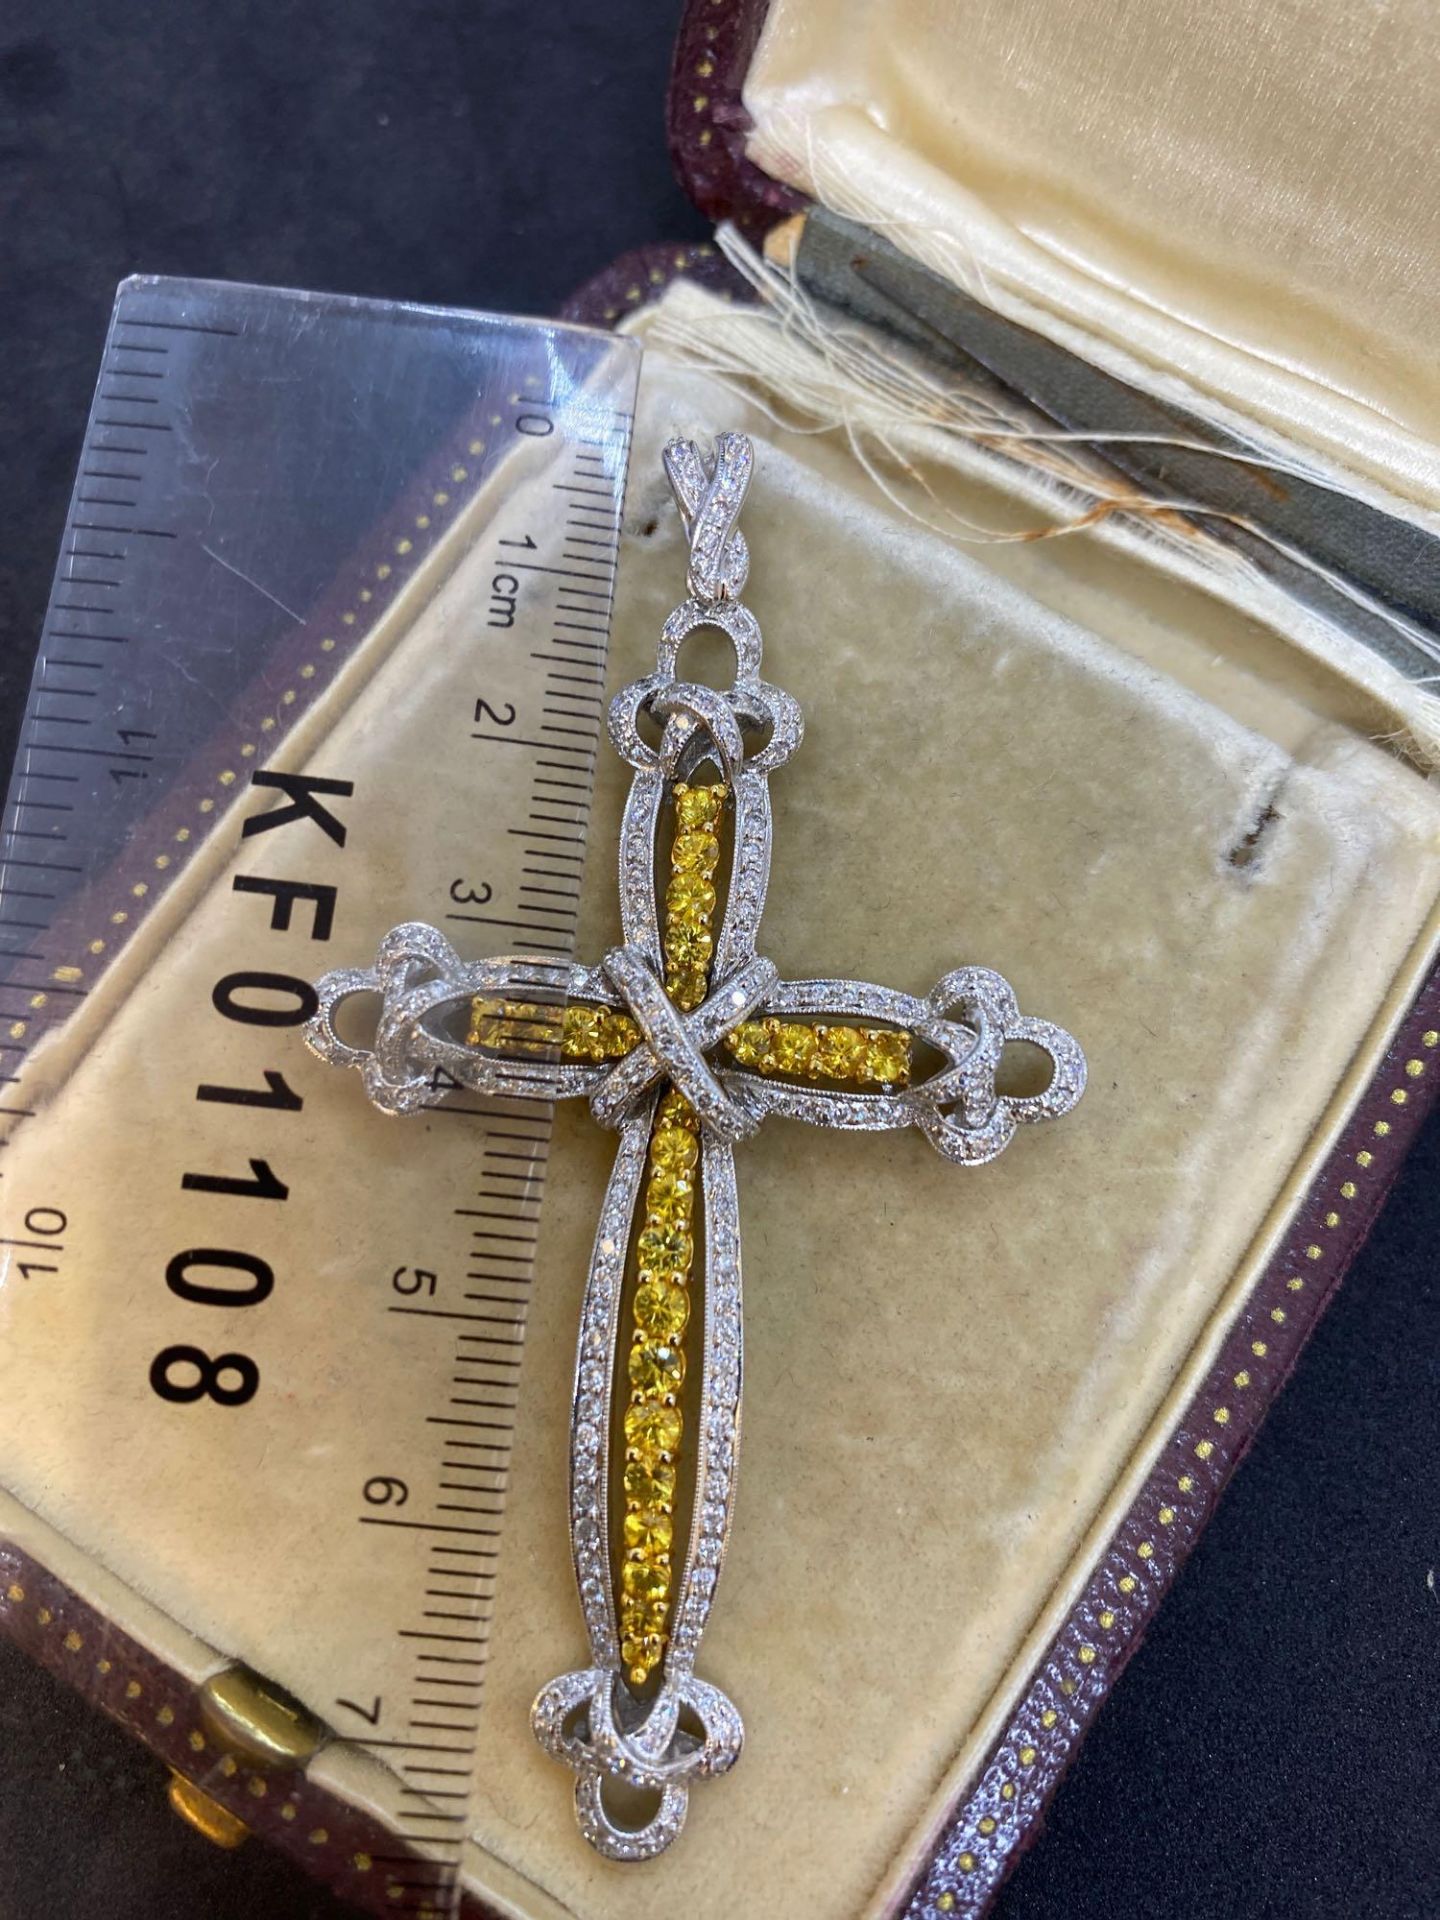 18ct White Gold Yellow Sapphire & Diamond Cross 1.27ct of Diamonds - 1.81ct Yellow Sapphires - Image 3 of 5